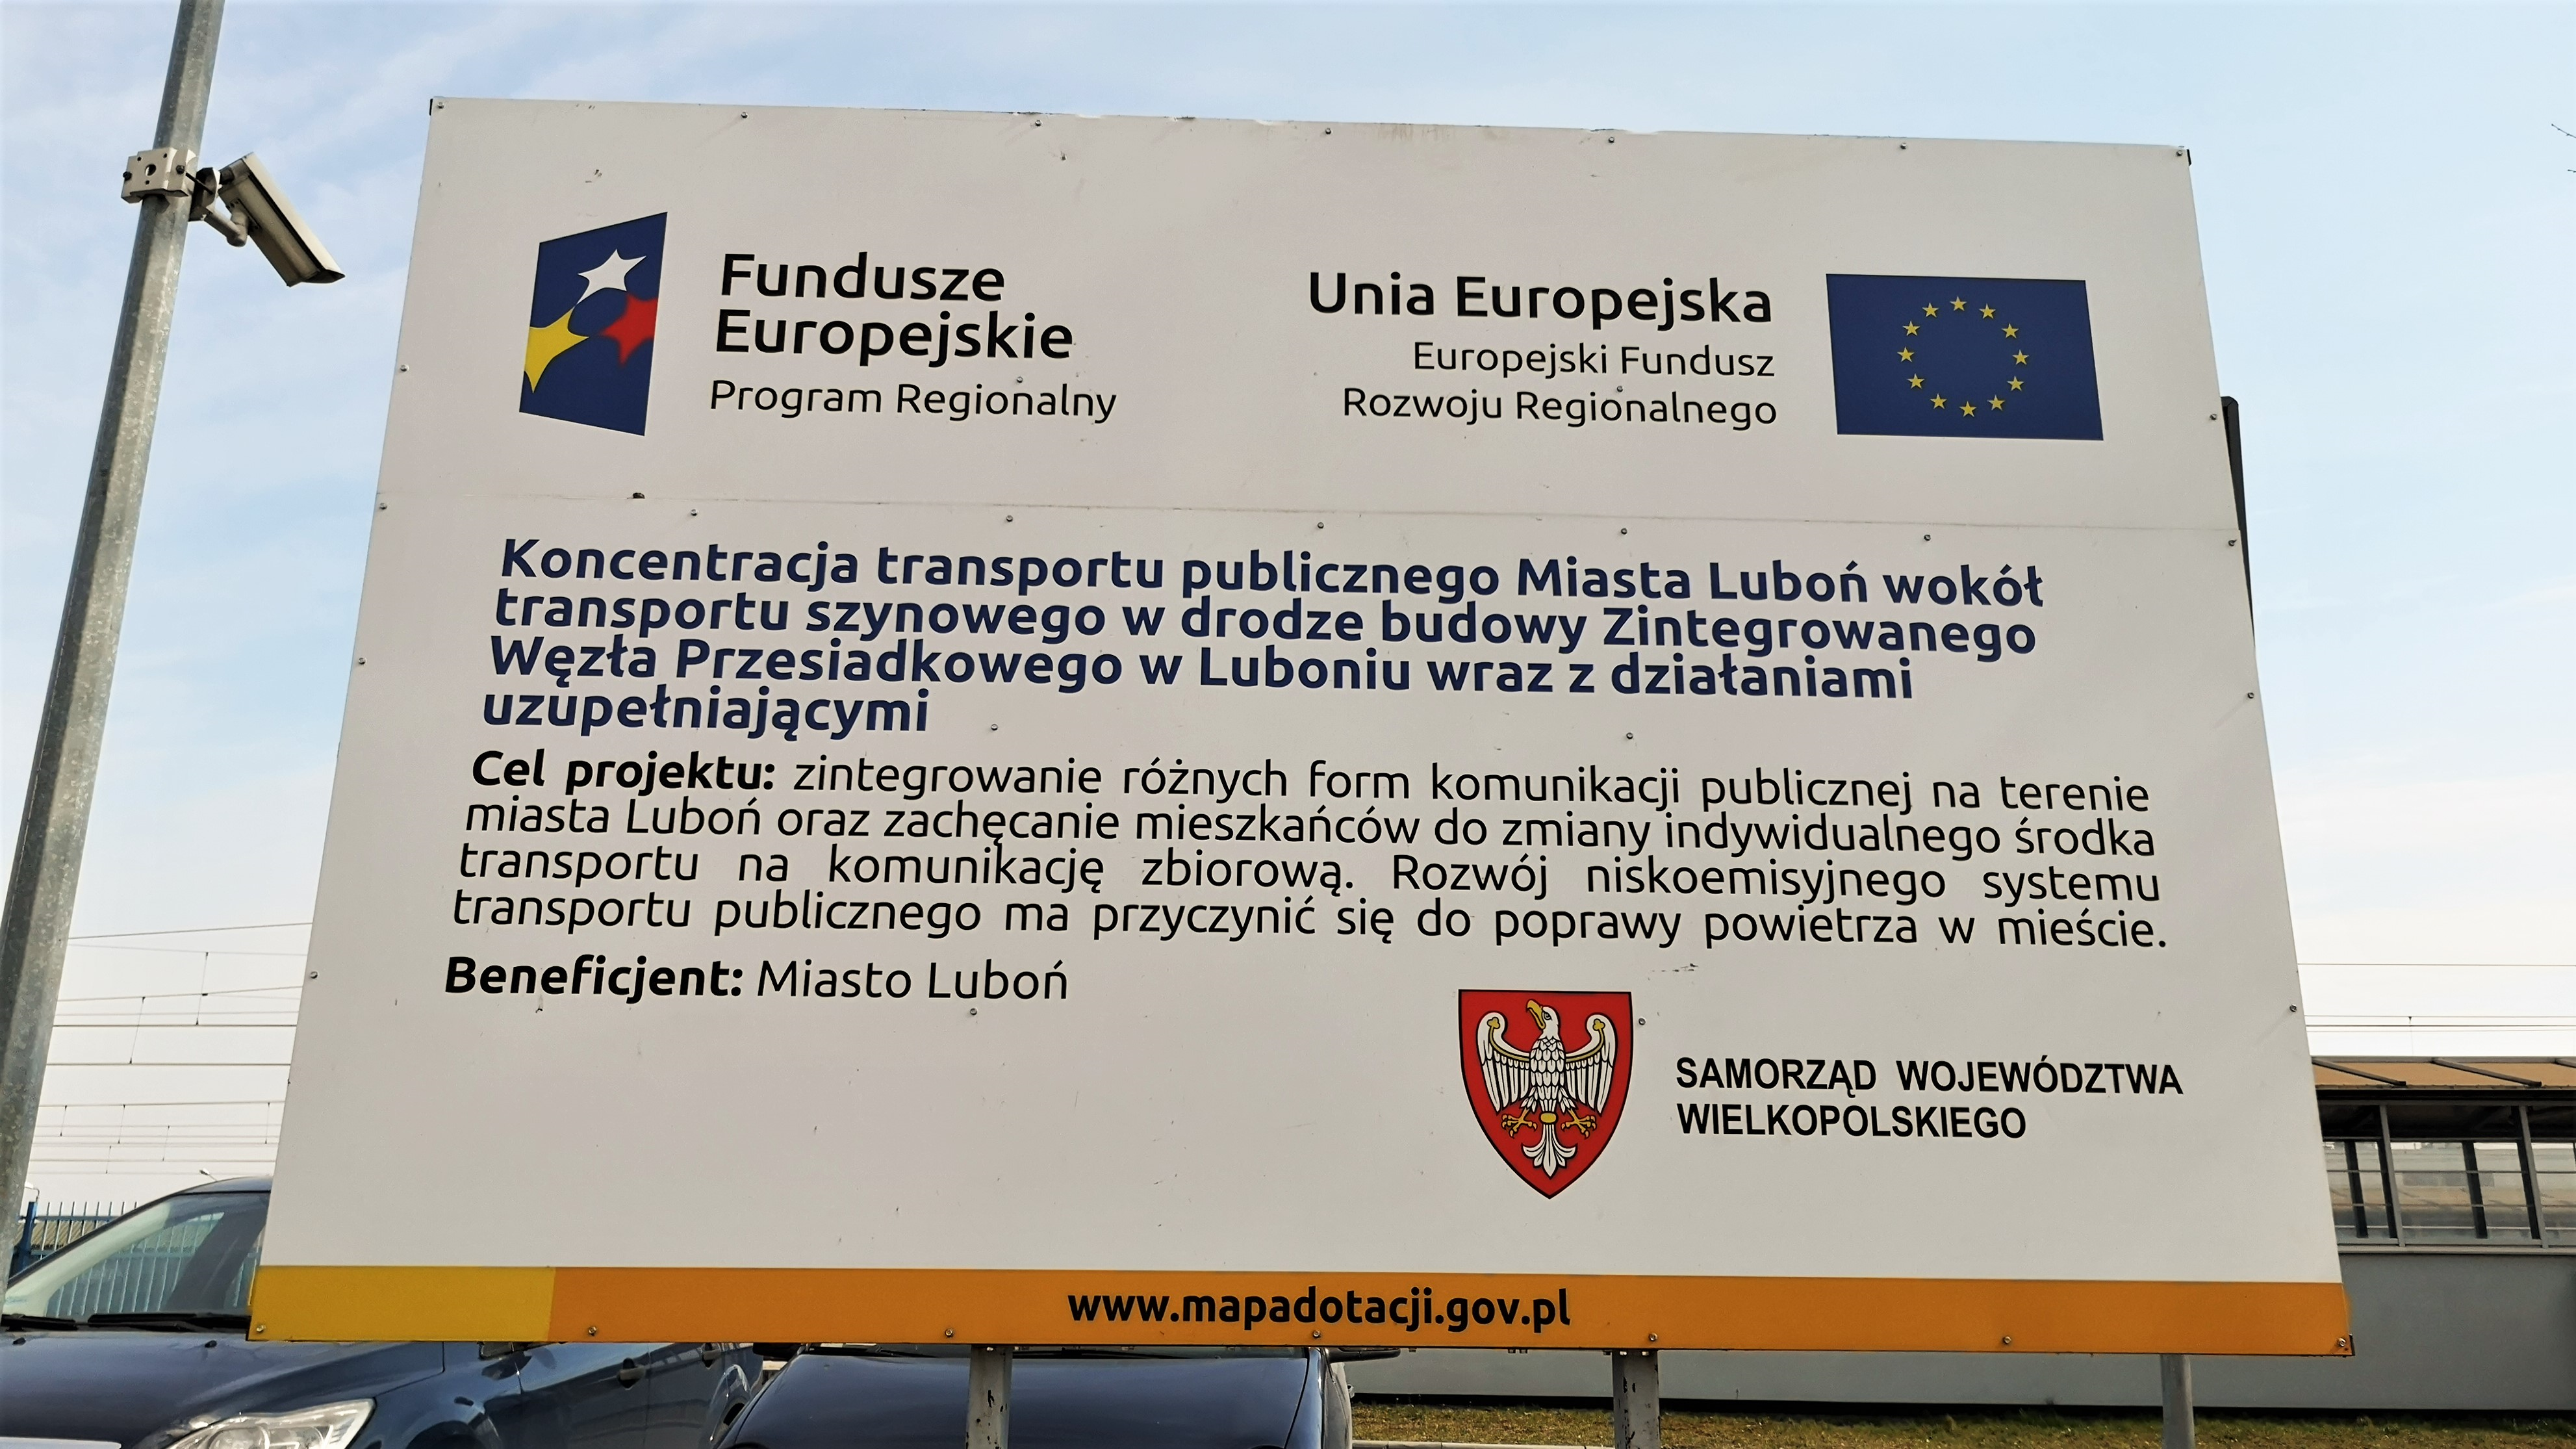 Na zdj widoczna tablica promocyjna mówiąca o dofinansowaniu projektu z funduszy unijnych